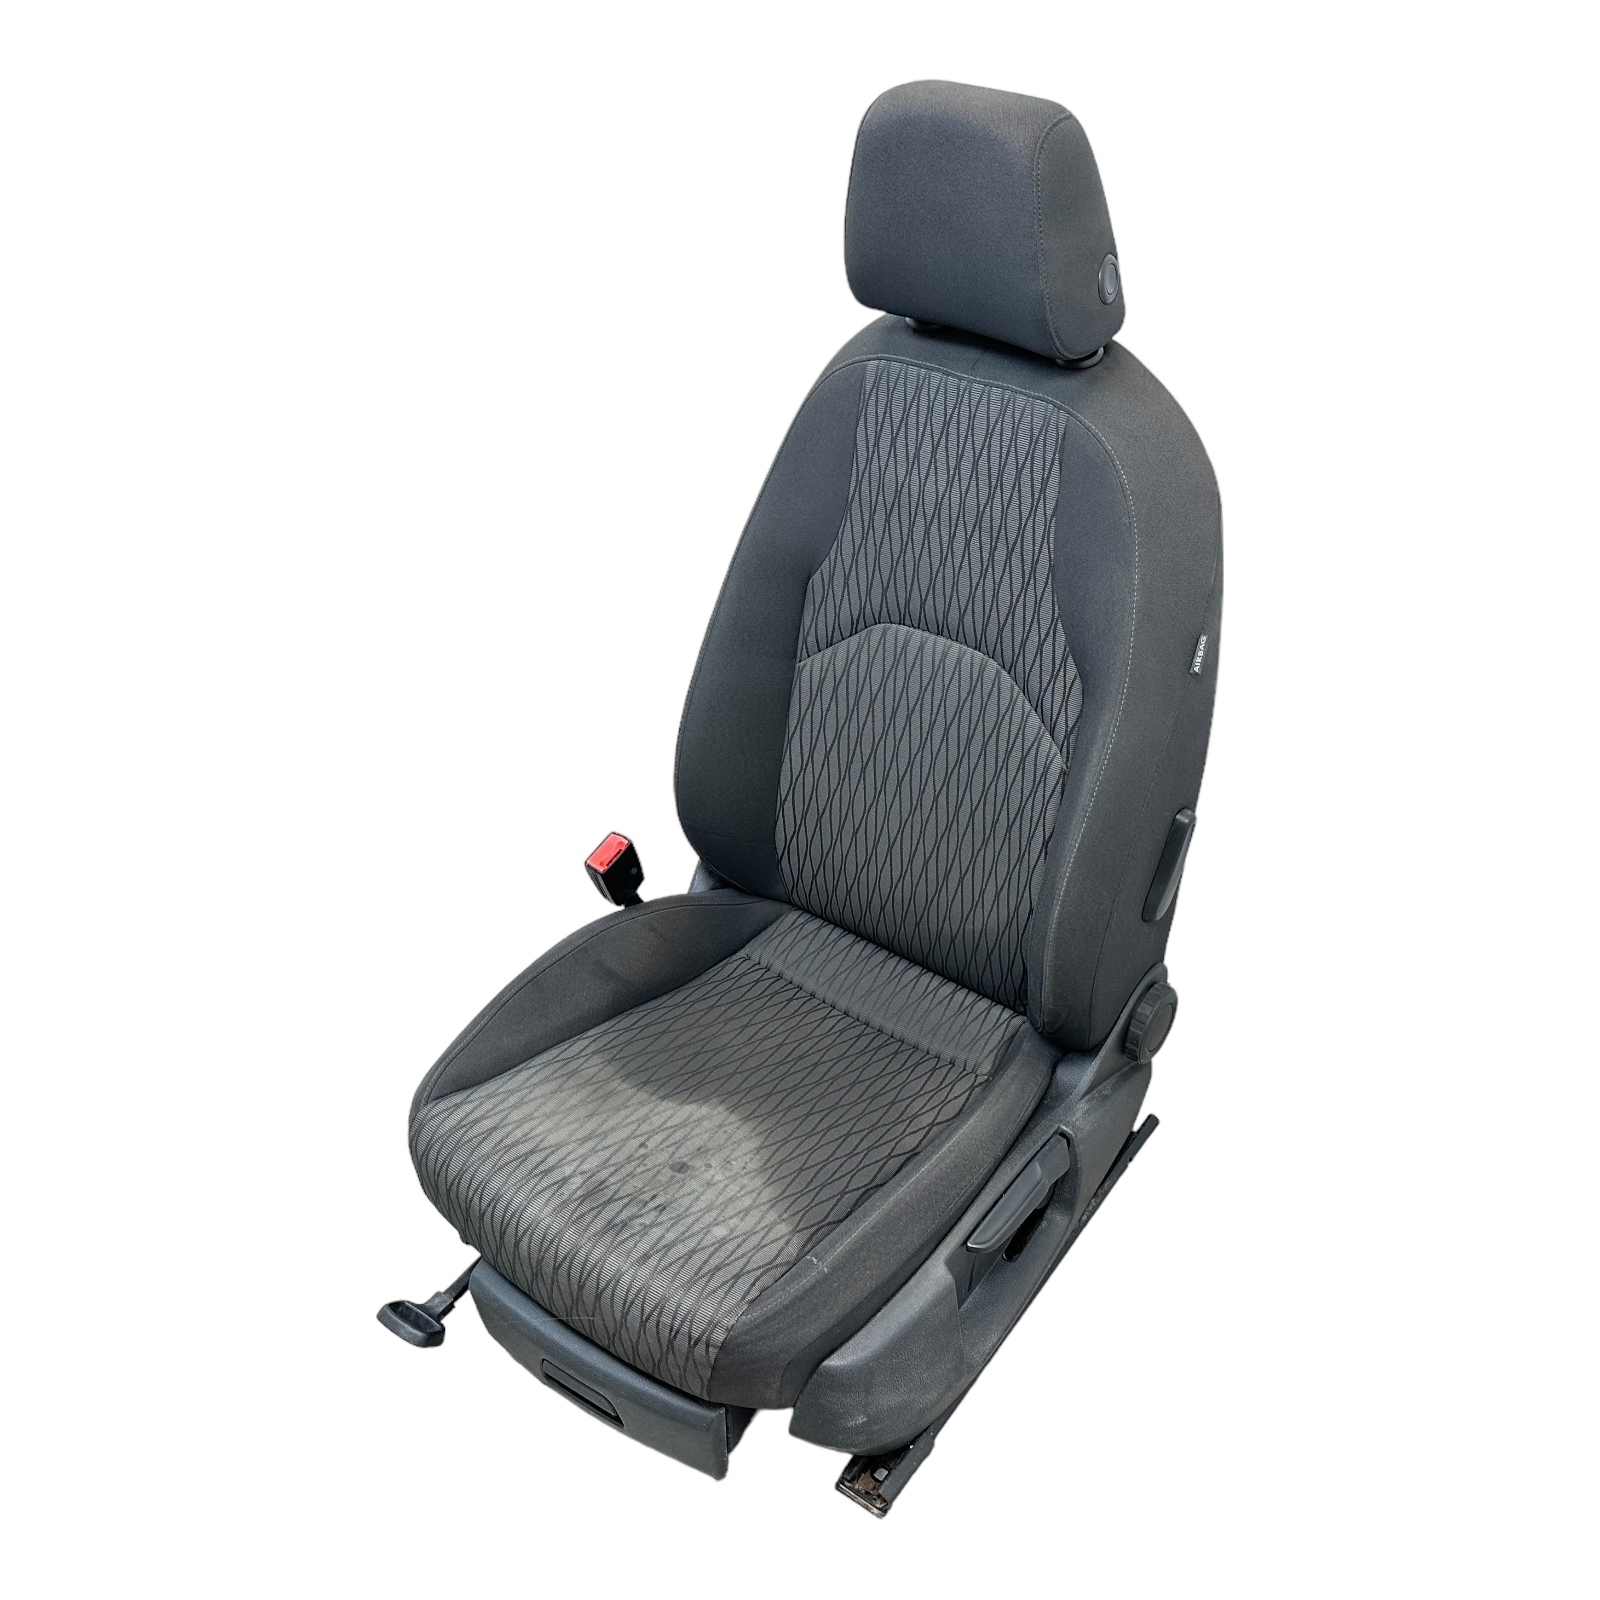 Sitz vorne links Fahrersitz Stoff Seat Leon 5F schwarz anthrazit, Sitze,  Rückbänke, Innenraum und Einrichtung